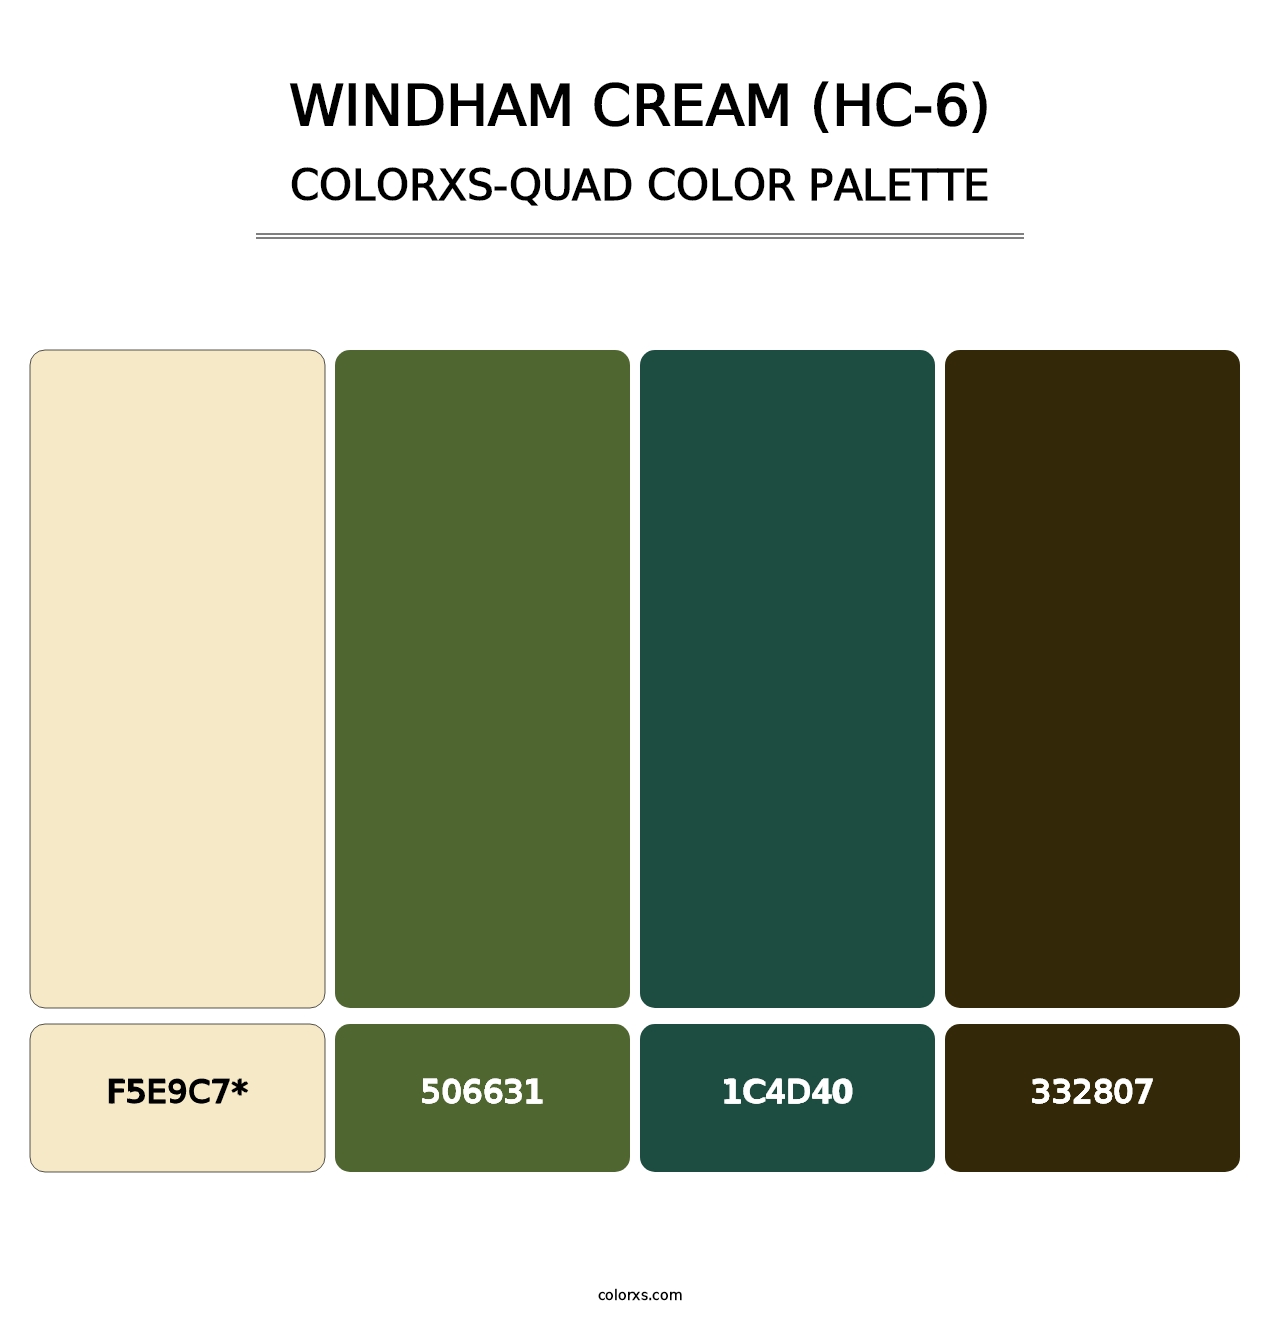 Windham Cream (HC-6) - Colorxs Quad Palette